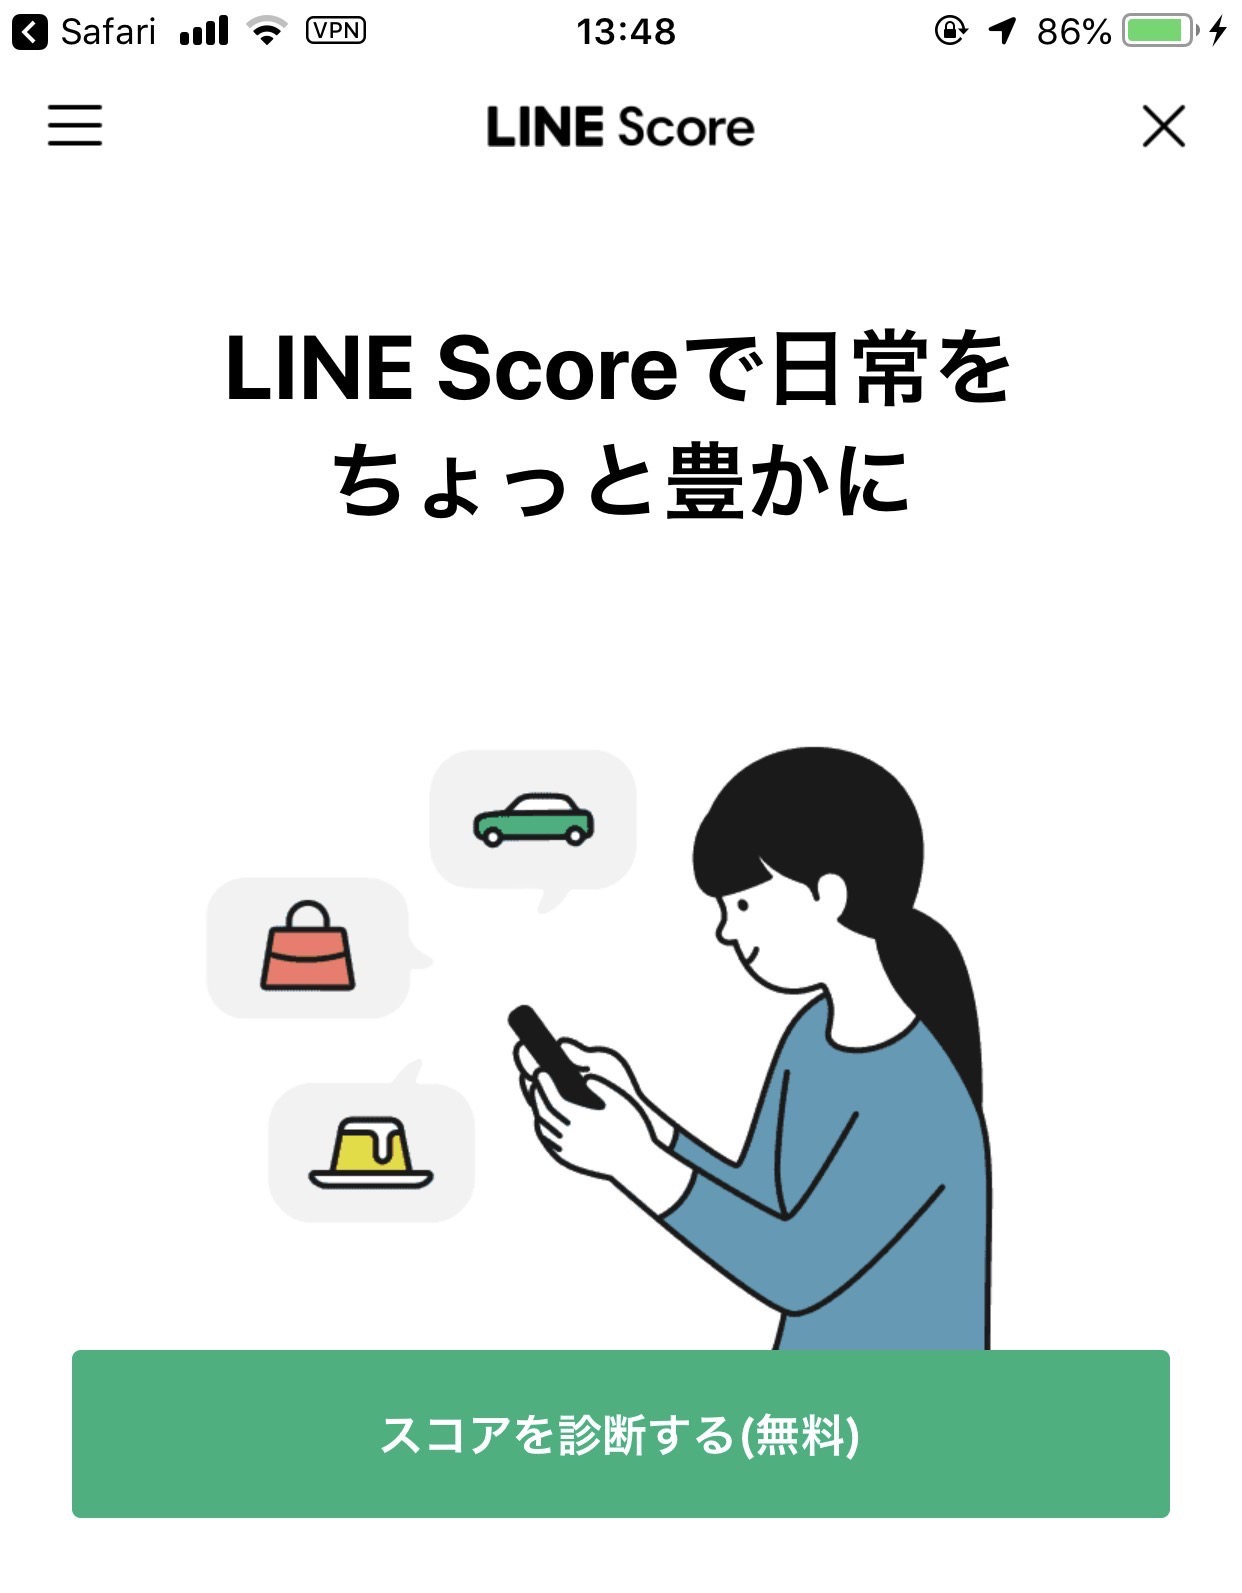 LINEの信用スコアサービス「LINE Score」早速スコア診断してみた